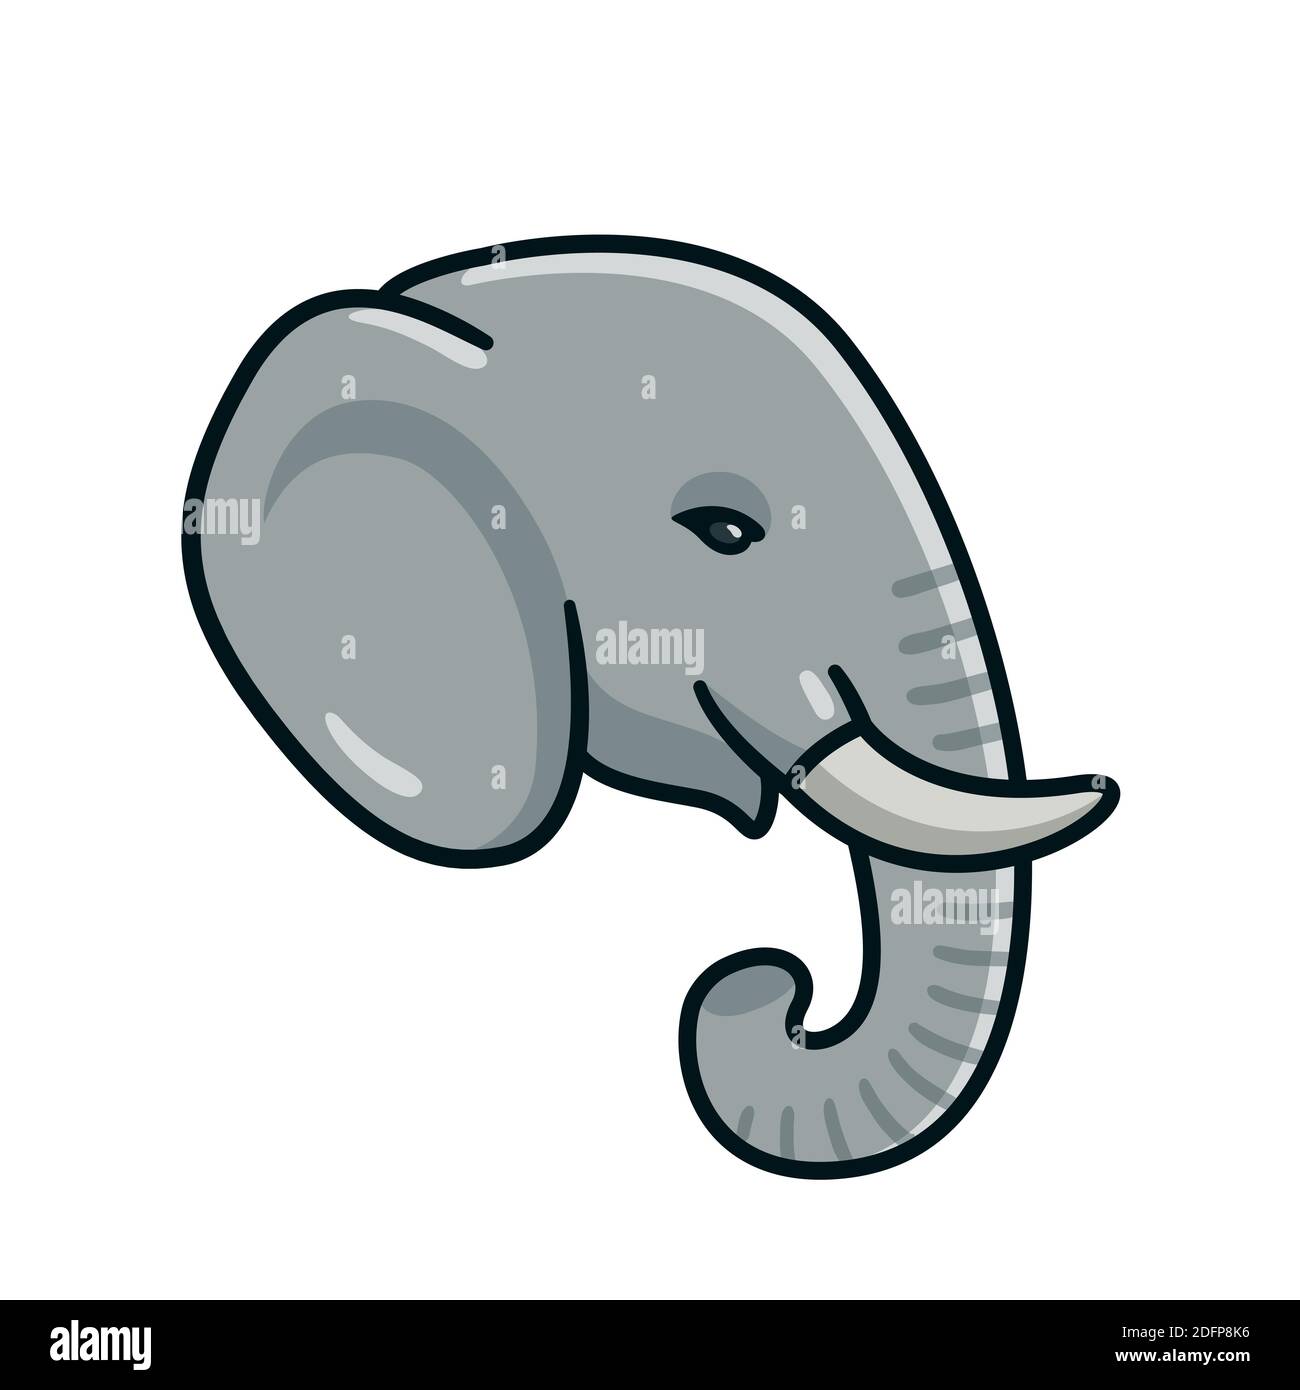 Cartoon elephant head. Hand drawn elephant face on profile, vector clip art illustration. Stock Vector